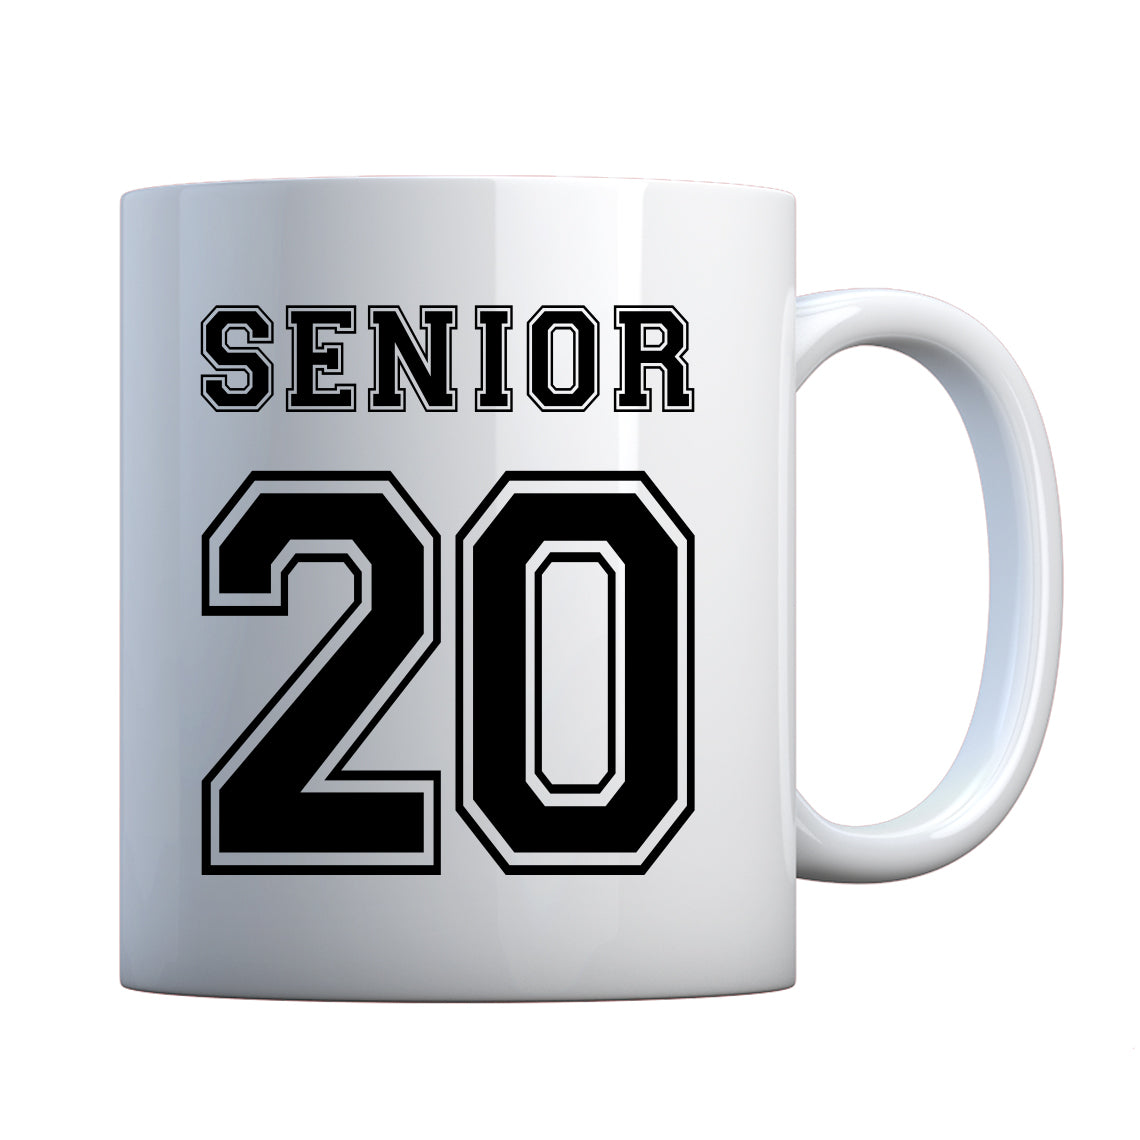 Mug Senior 2020 Ceramic Gift Mug